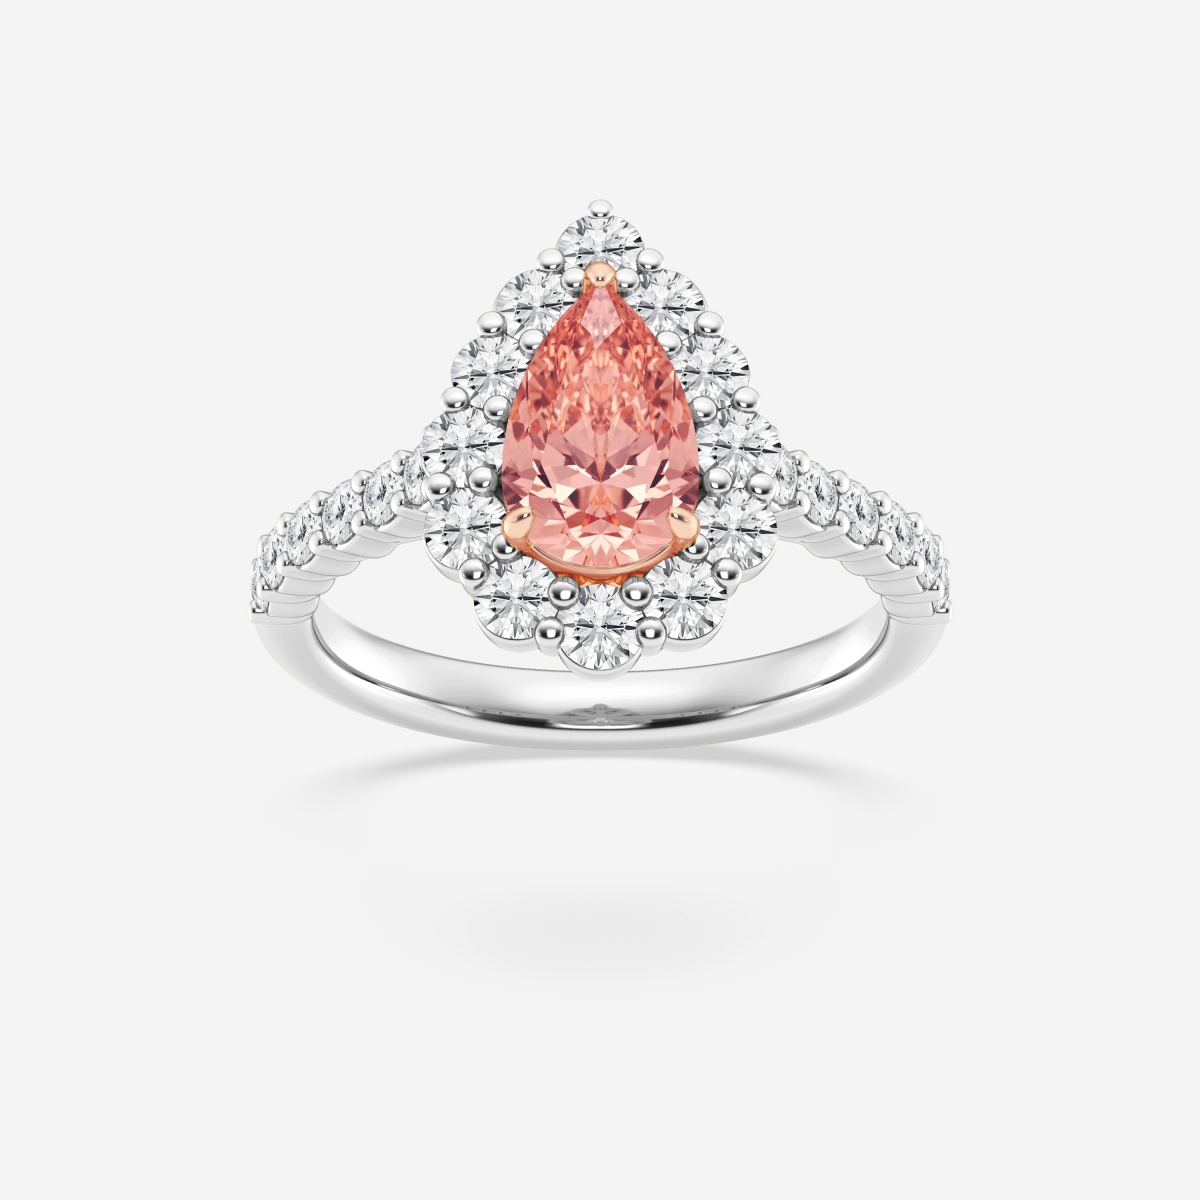 Halo-Verlobungsring mit im Labor gezüchtetem Tropfen-Diamanten in Fancy Rosa mit Krappenfassung